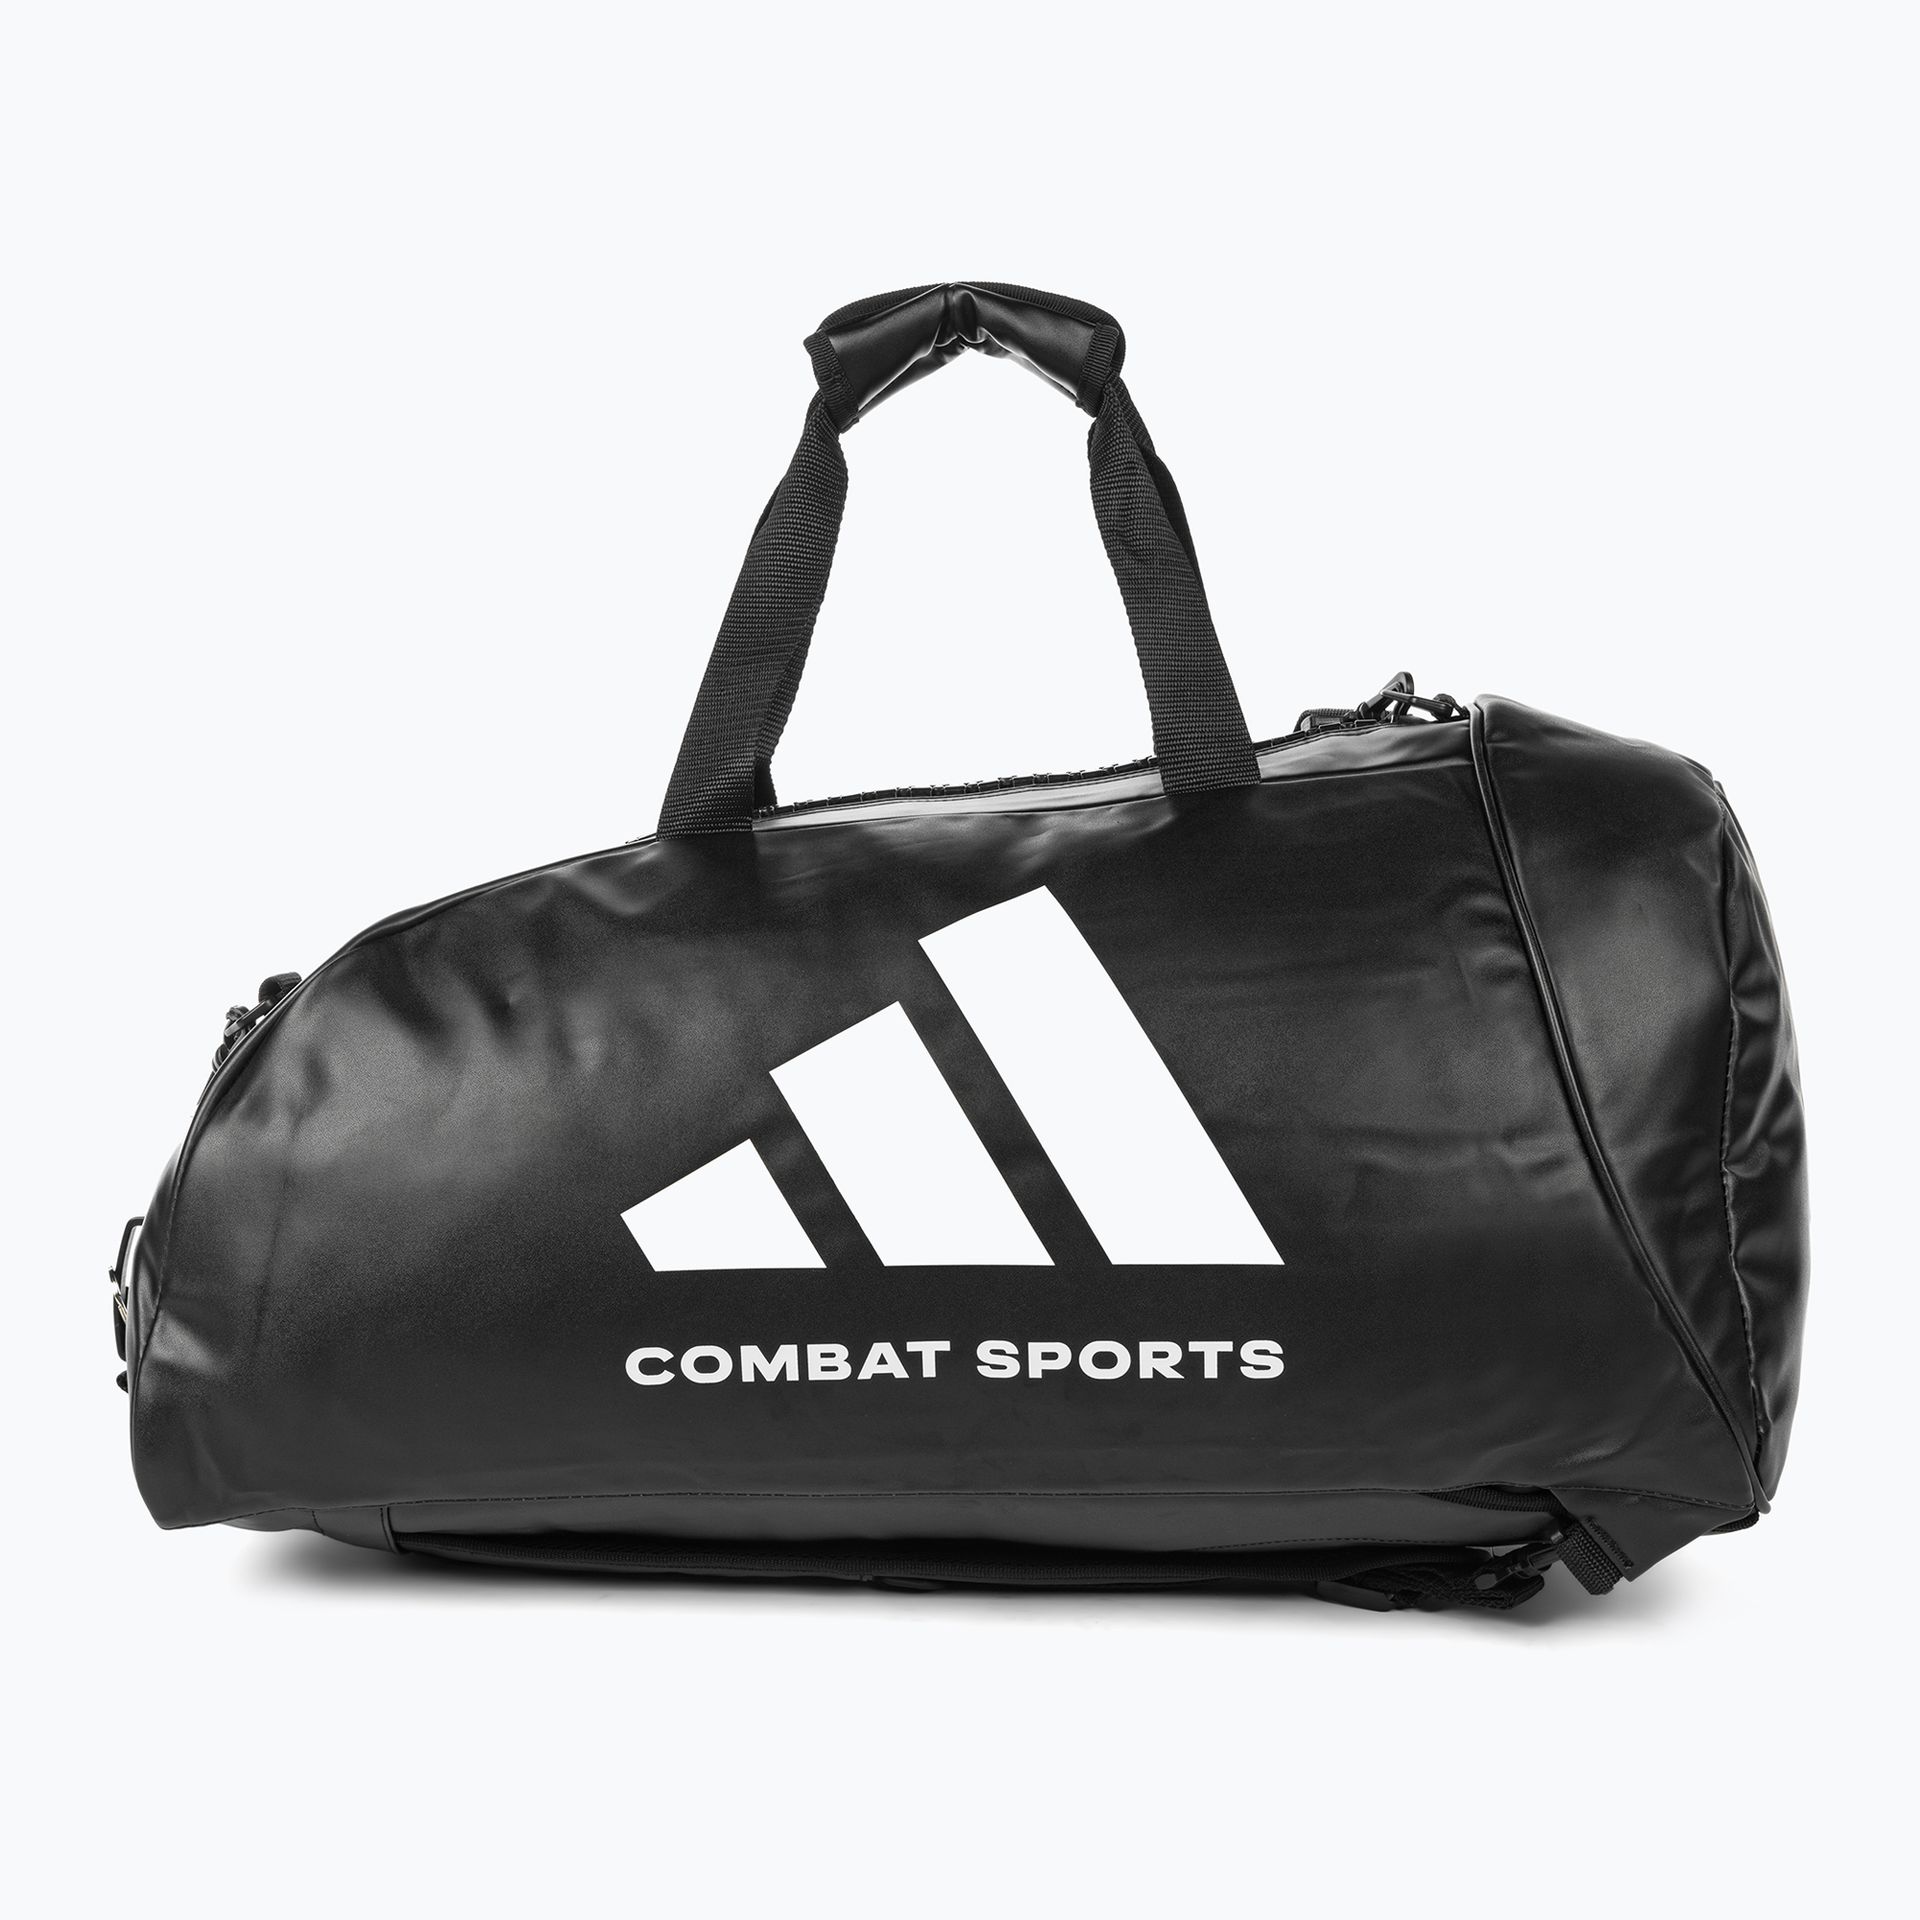 Torba treningowa adidas Combat Sports 65 l black/white | WYSYŁKA W 24H | 30 DNI NA ZWROT